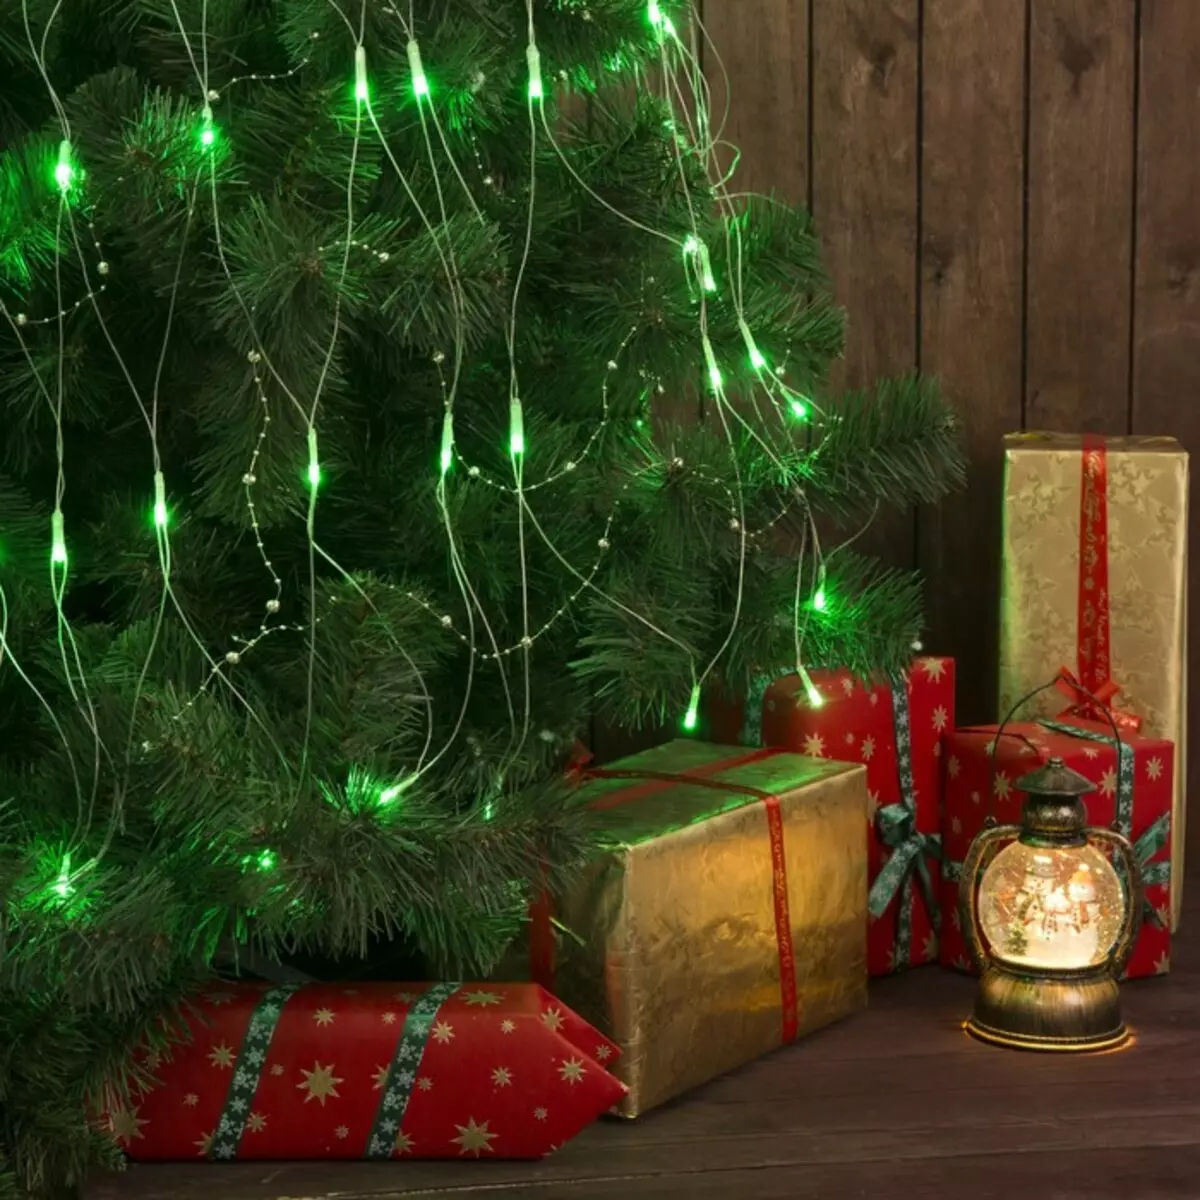 Ako zdobí vianočný strom s vencom? Ako správne a krásne obliekať to podľa schémy s žiariace elektrickej girlandami a ďalšie veniec? 7630_23